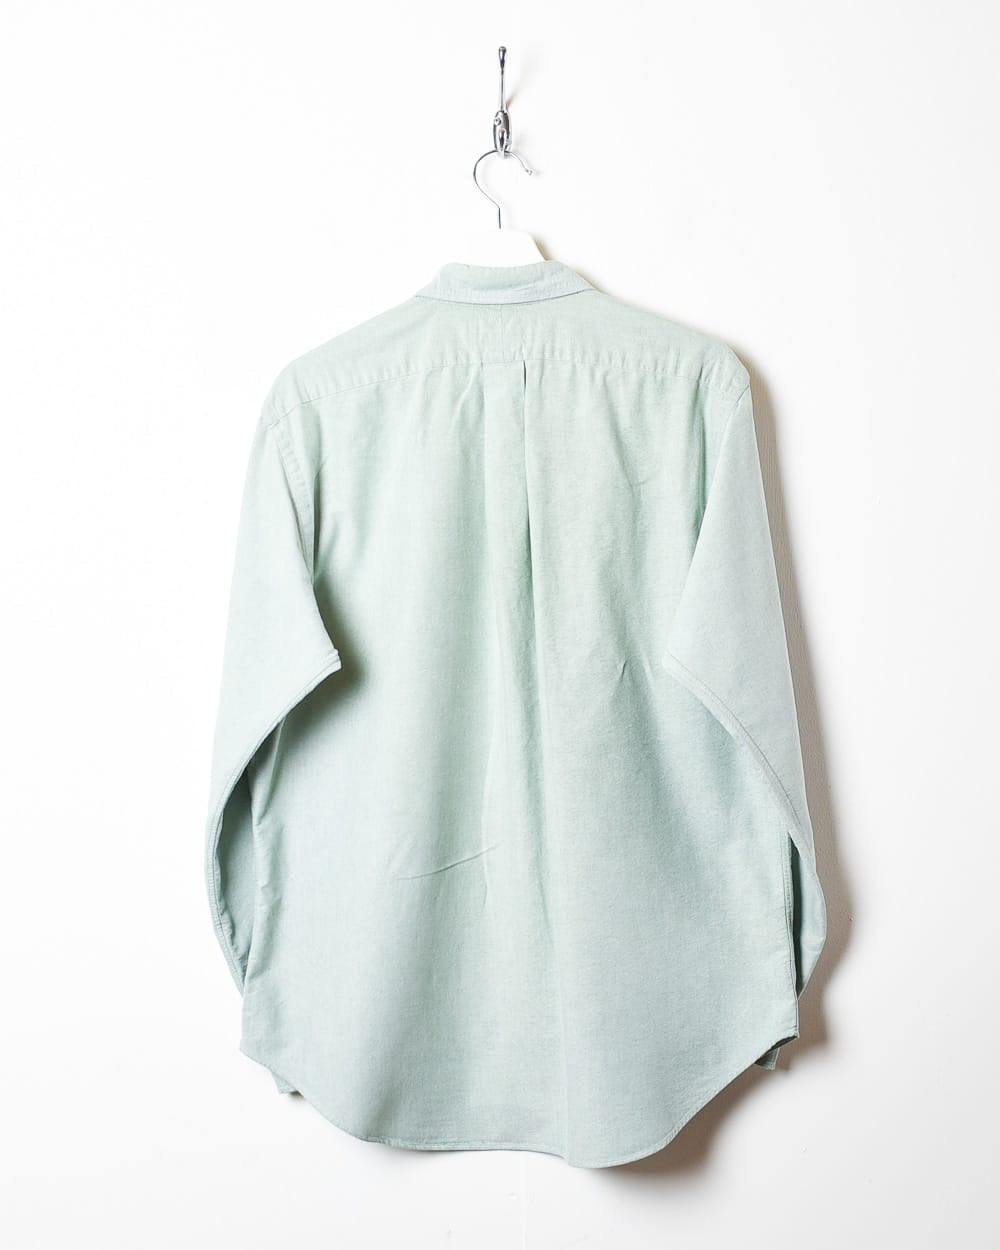 Green Polo Ralph Lauren Shirt - Large